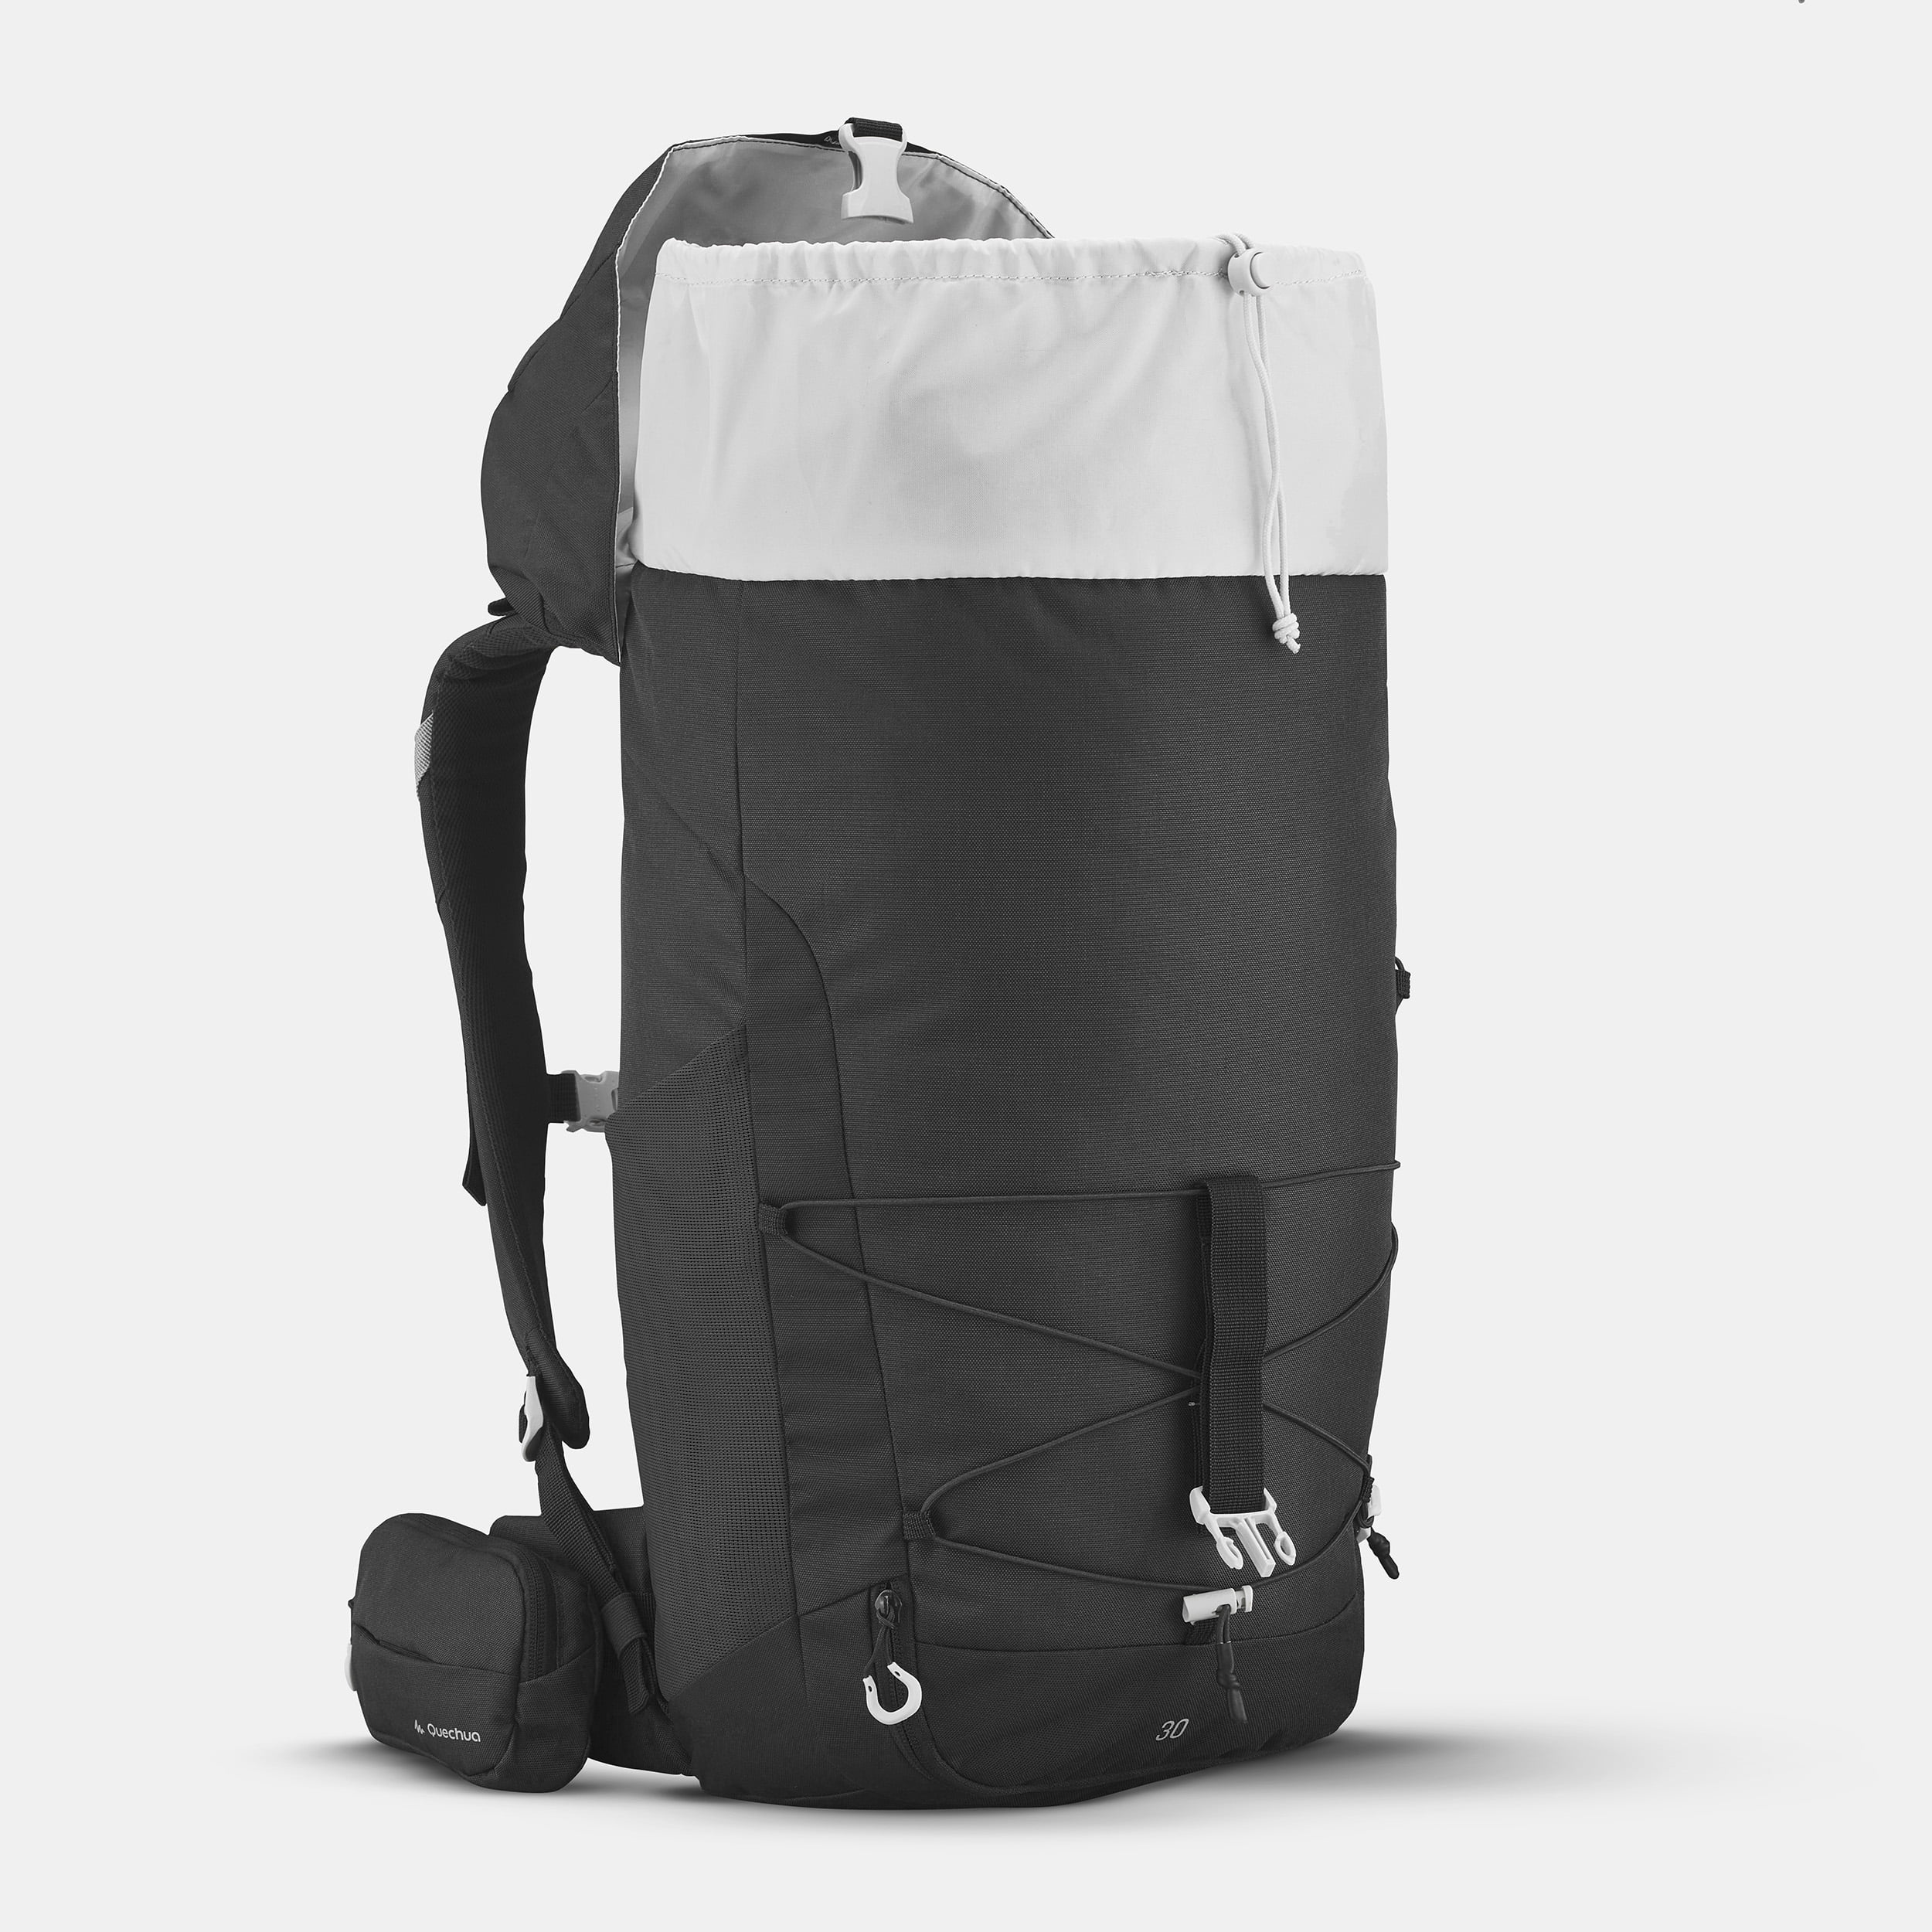 Buy 30 litre Hiking Backpack Dark Grey Online | Quechua Bag 30 Litre Hiking